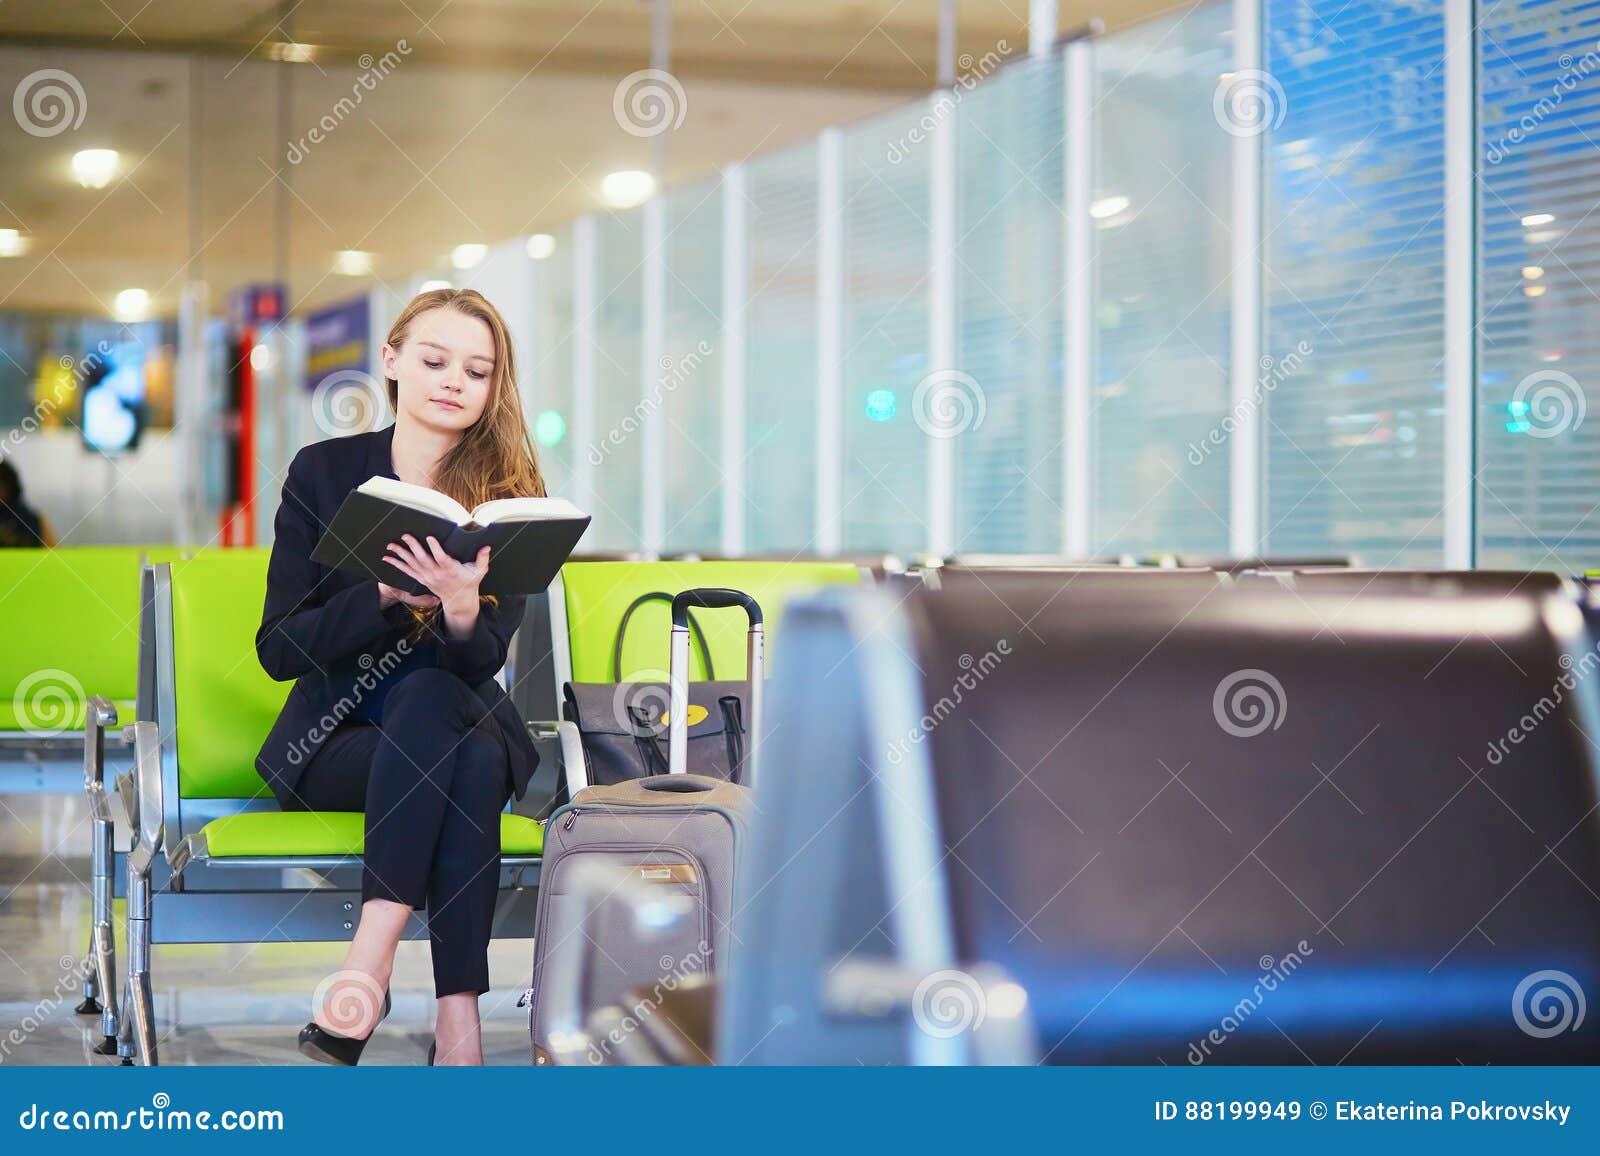 Reading terminal. Девушка в аэропорту с книгой. Аэропорт книга. Аэропорт читать.